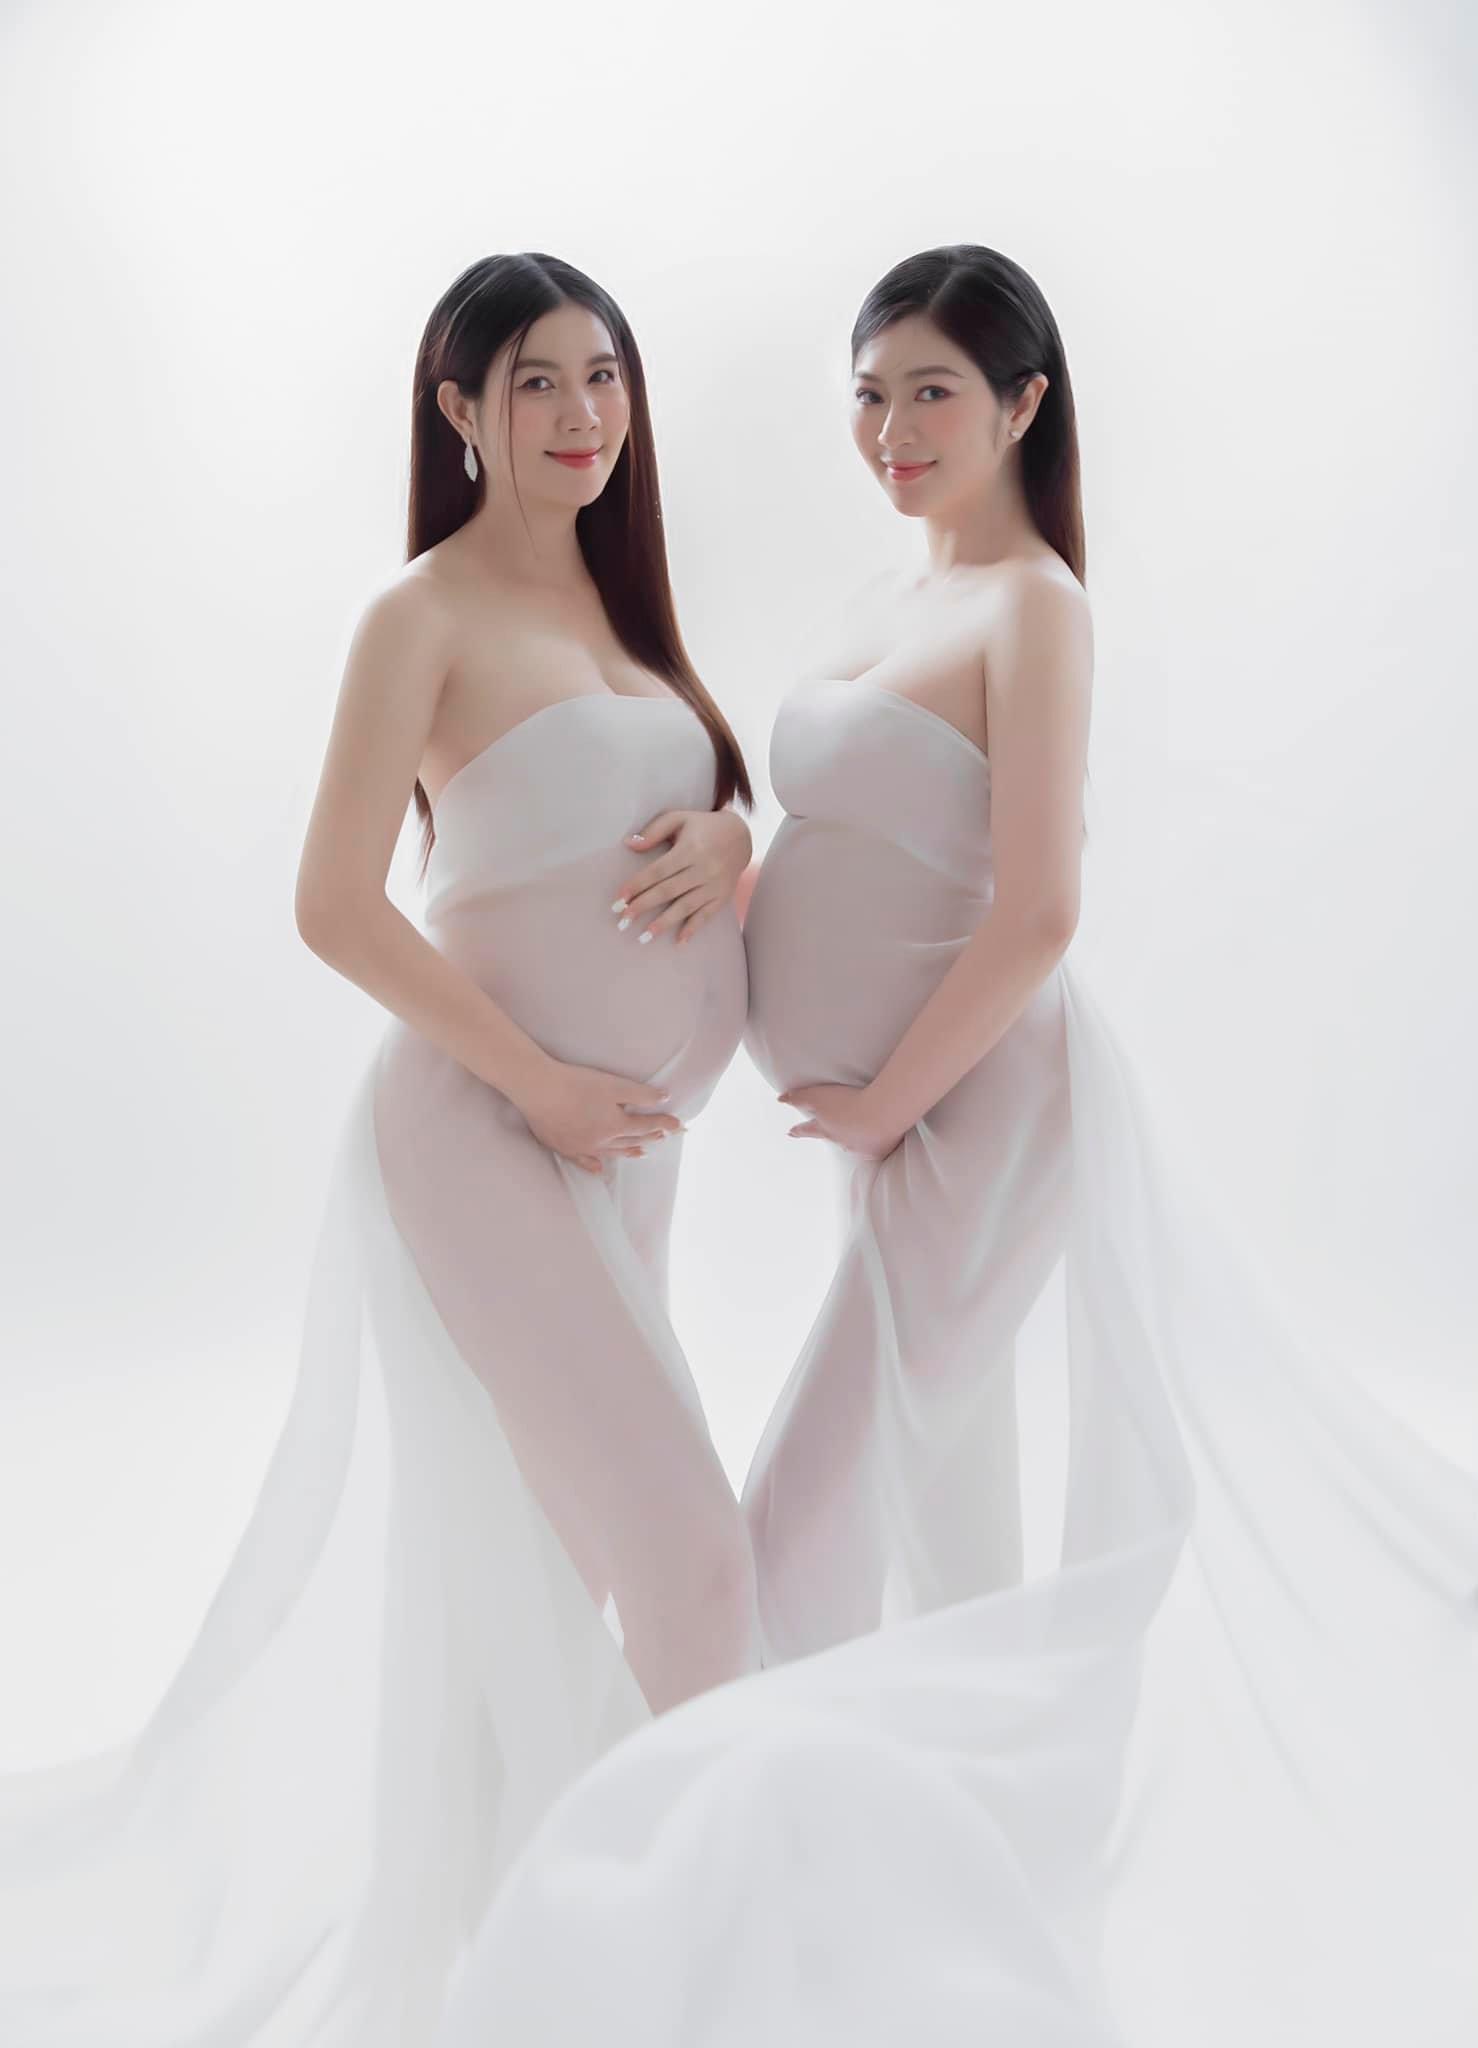 Kha Ly và Thanh Trúc đọ sắc trong bộ ảnh “Chúng mình có bầu”, tiết lộ luôn giới tính và thời điểm dự sinh hai em bé